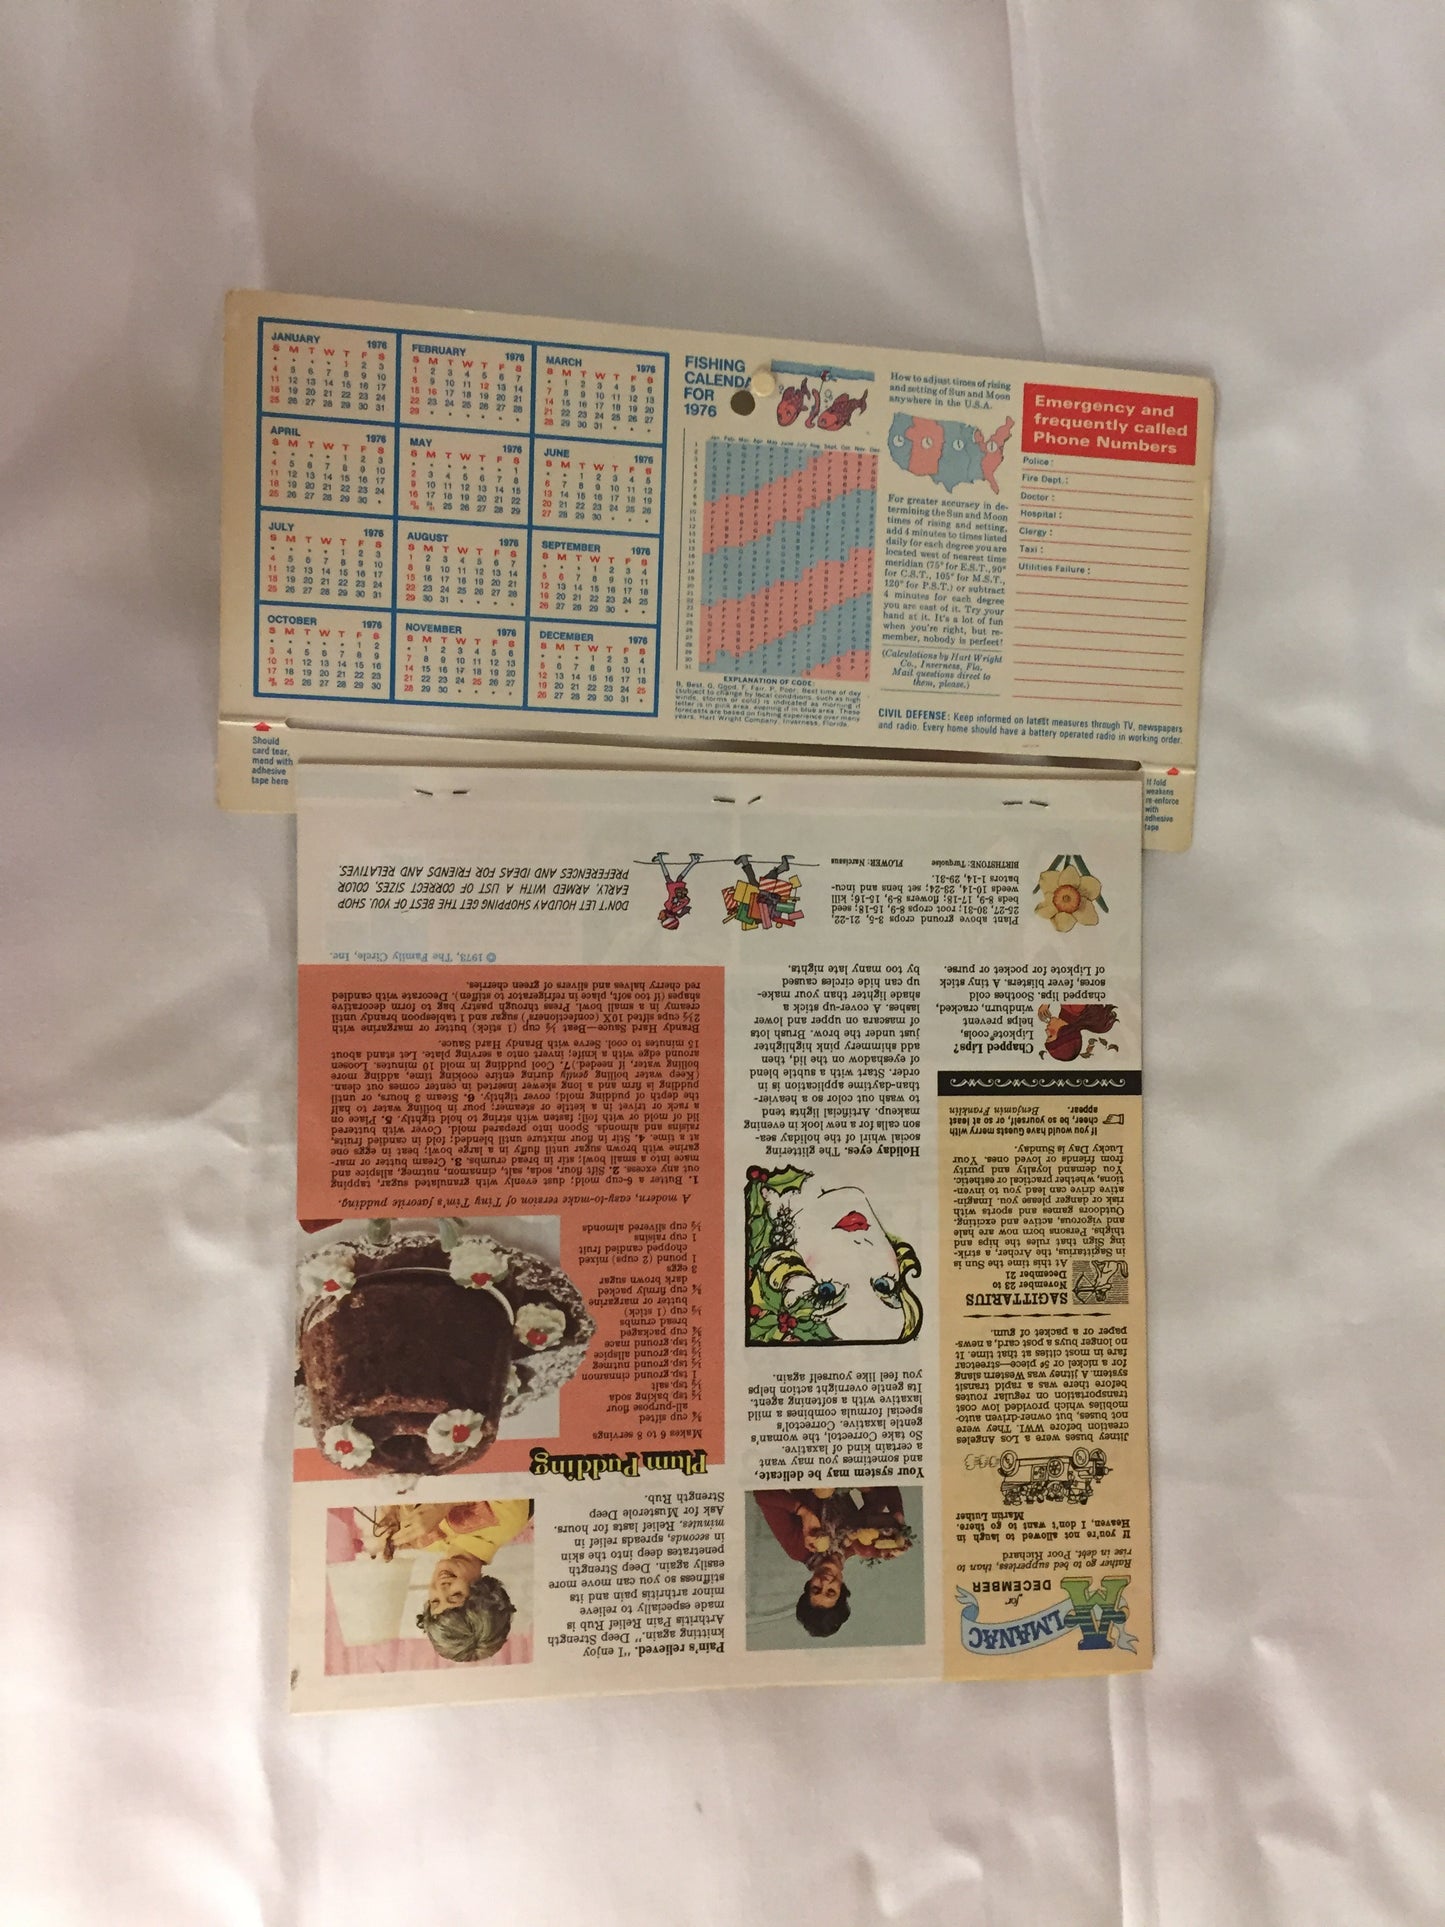 Vintage 1976 Cunningham's 21 Drug Store Advertising Calendar St. Joseph Family Almanac